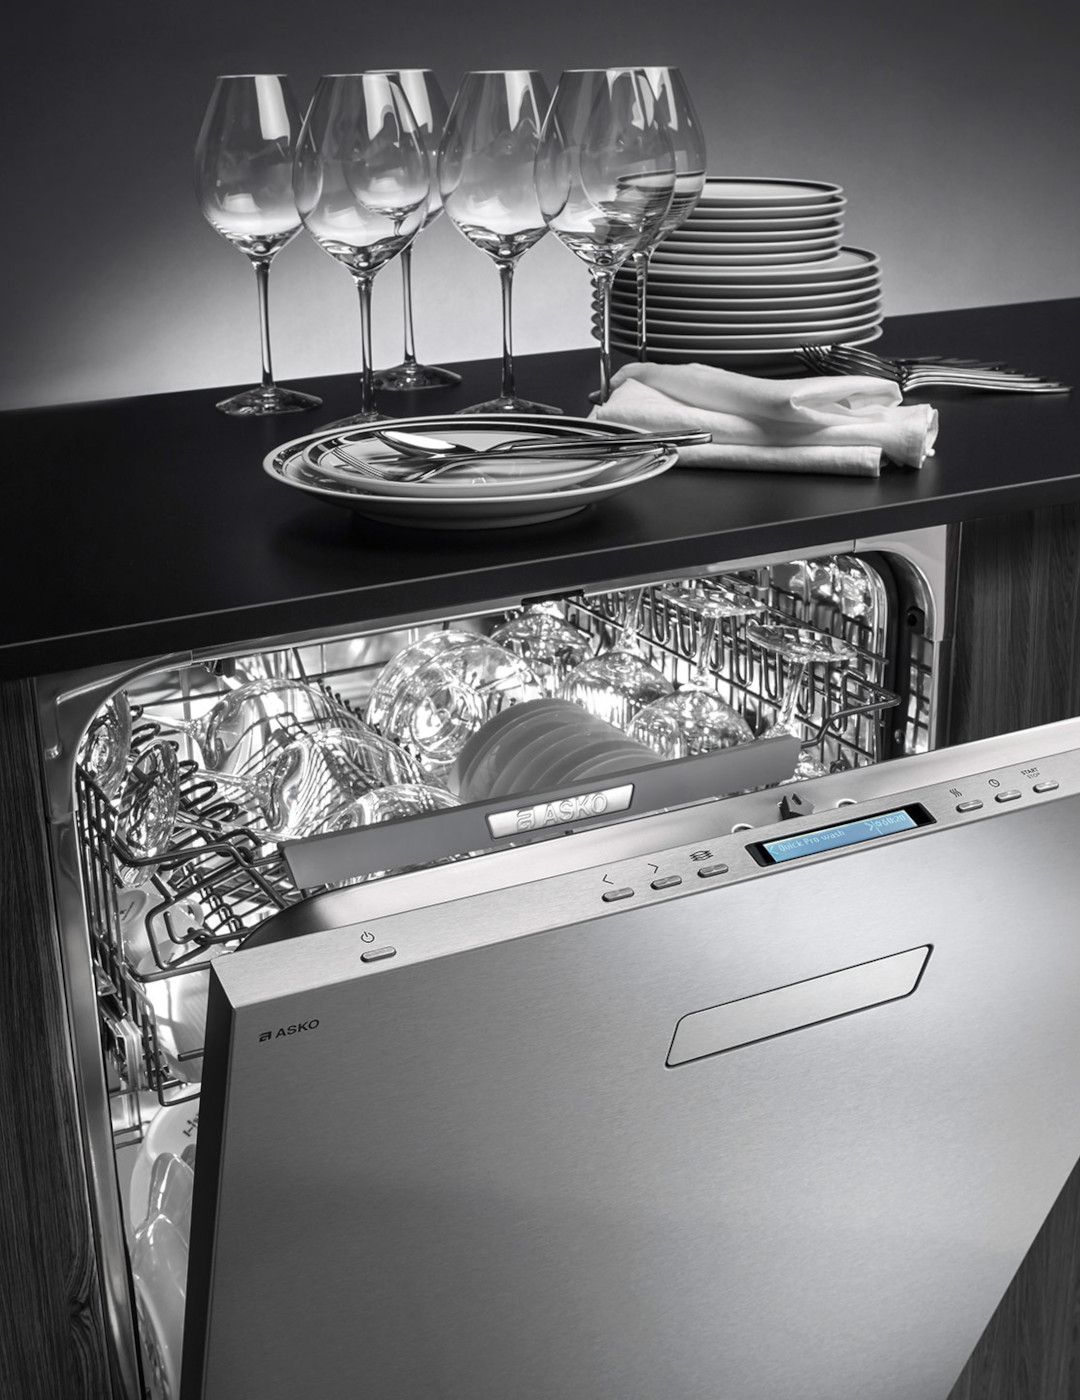 ASKO-Kitchen-Built-in-Dishwashers-Built-in-dishwashers-mobile.jpg